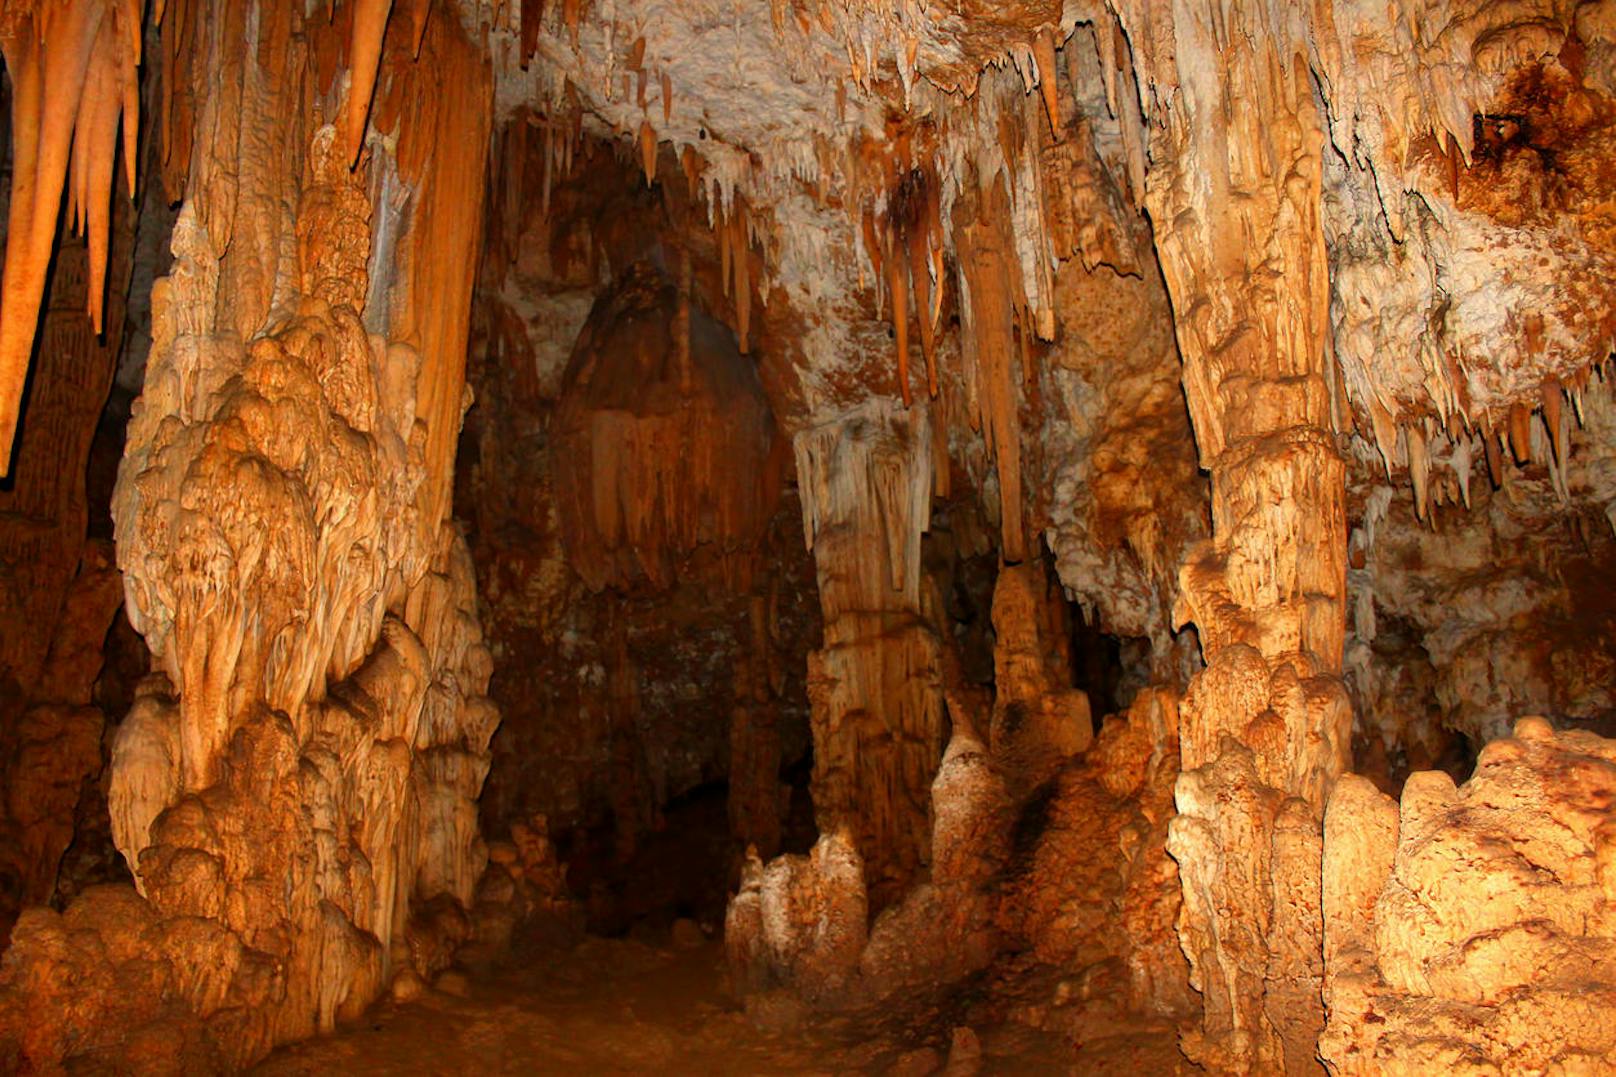 <b>Cueva Del Viento - Guajataca, Puerto Rico</b>
Eine wundervolle Höhle voller Stalaktiten sowie Stalagmiten. Umso weiter ihr in die Höhle vordringt, desto beeindruckender wird sie, da nahe des Eingangs viele Formationen beschädigt sind.